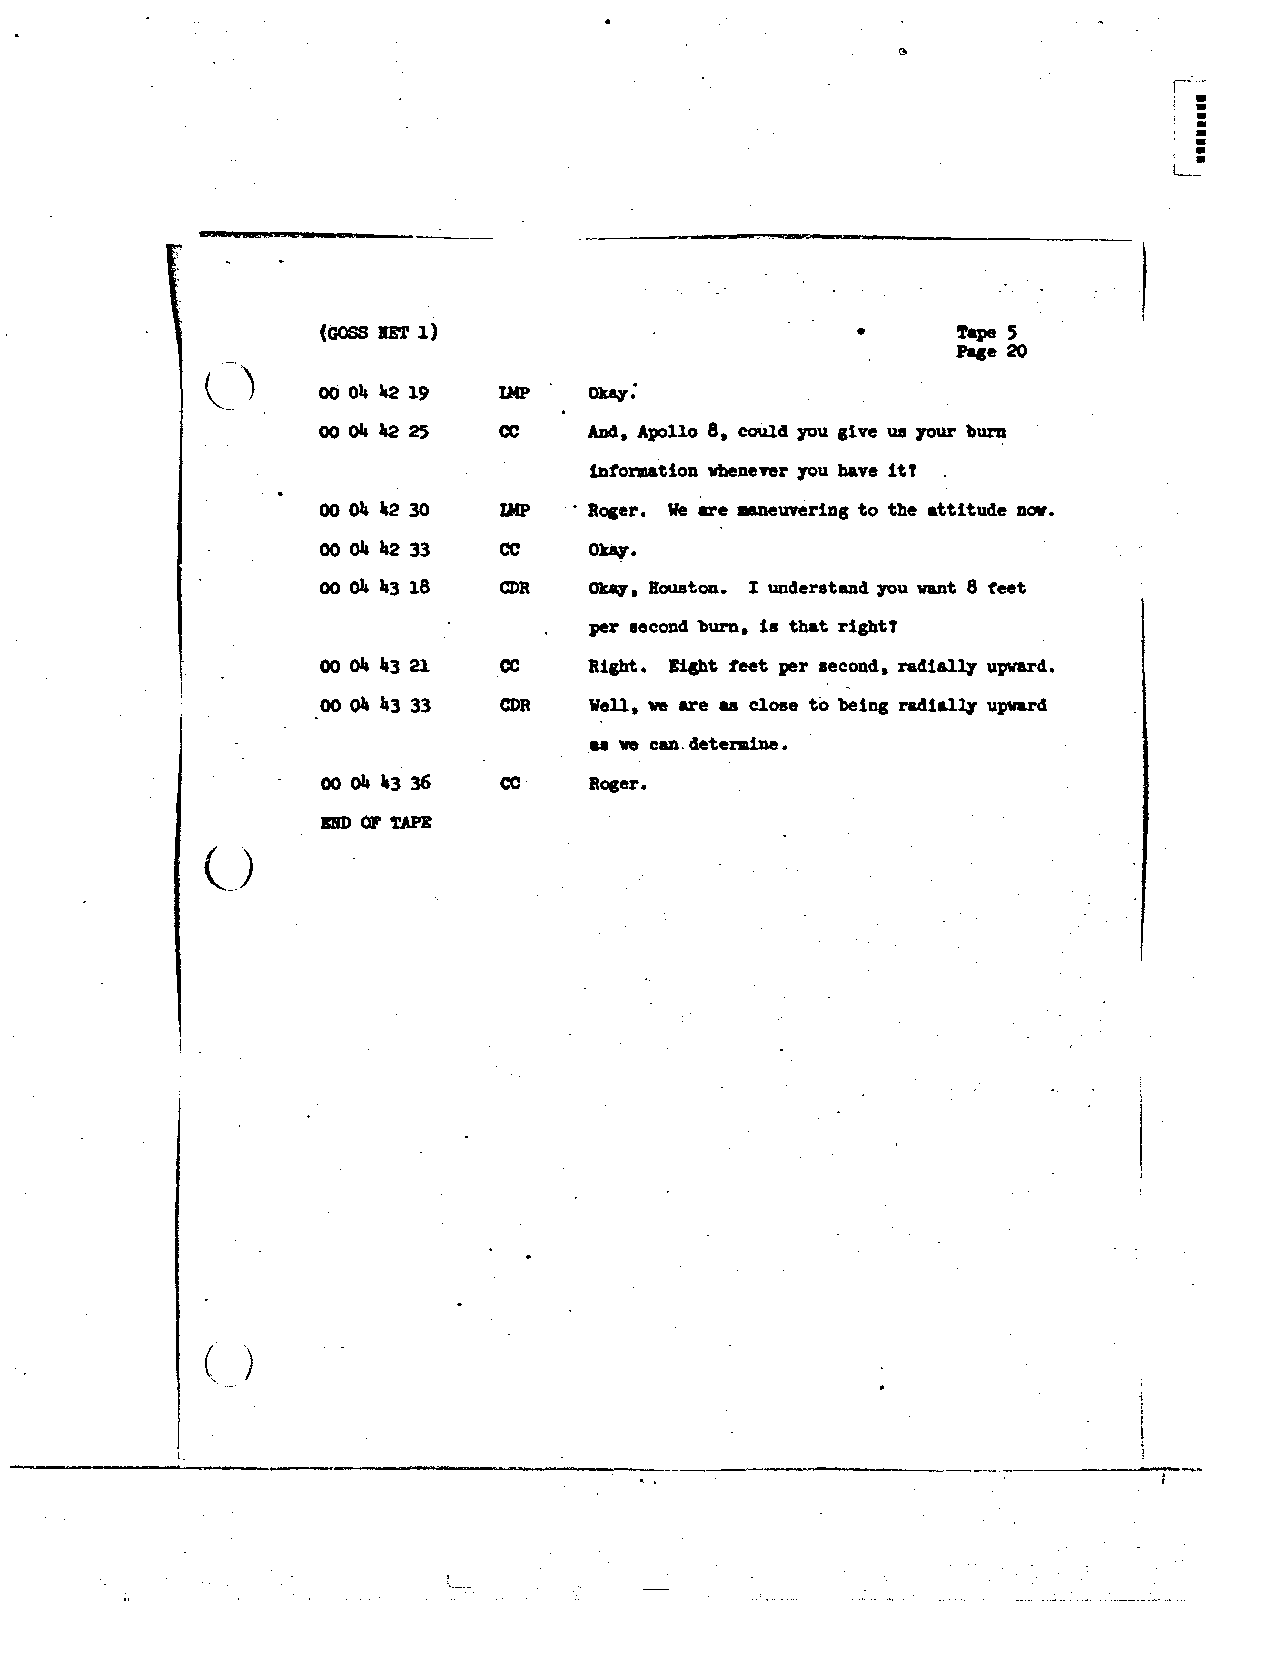 Page 46 of Apollo 8’s original transcript